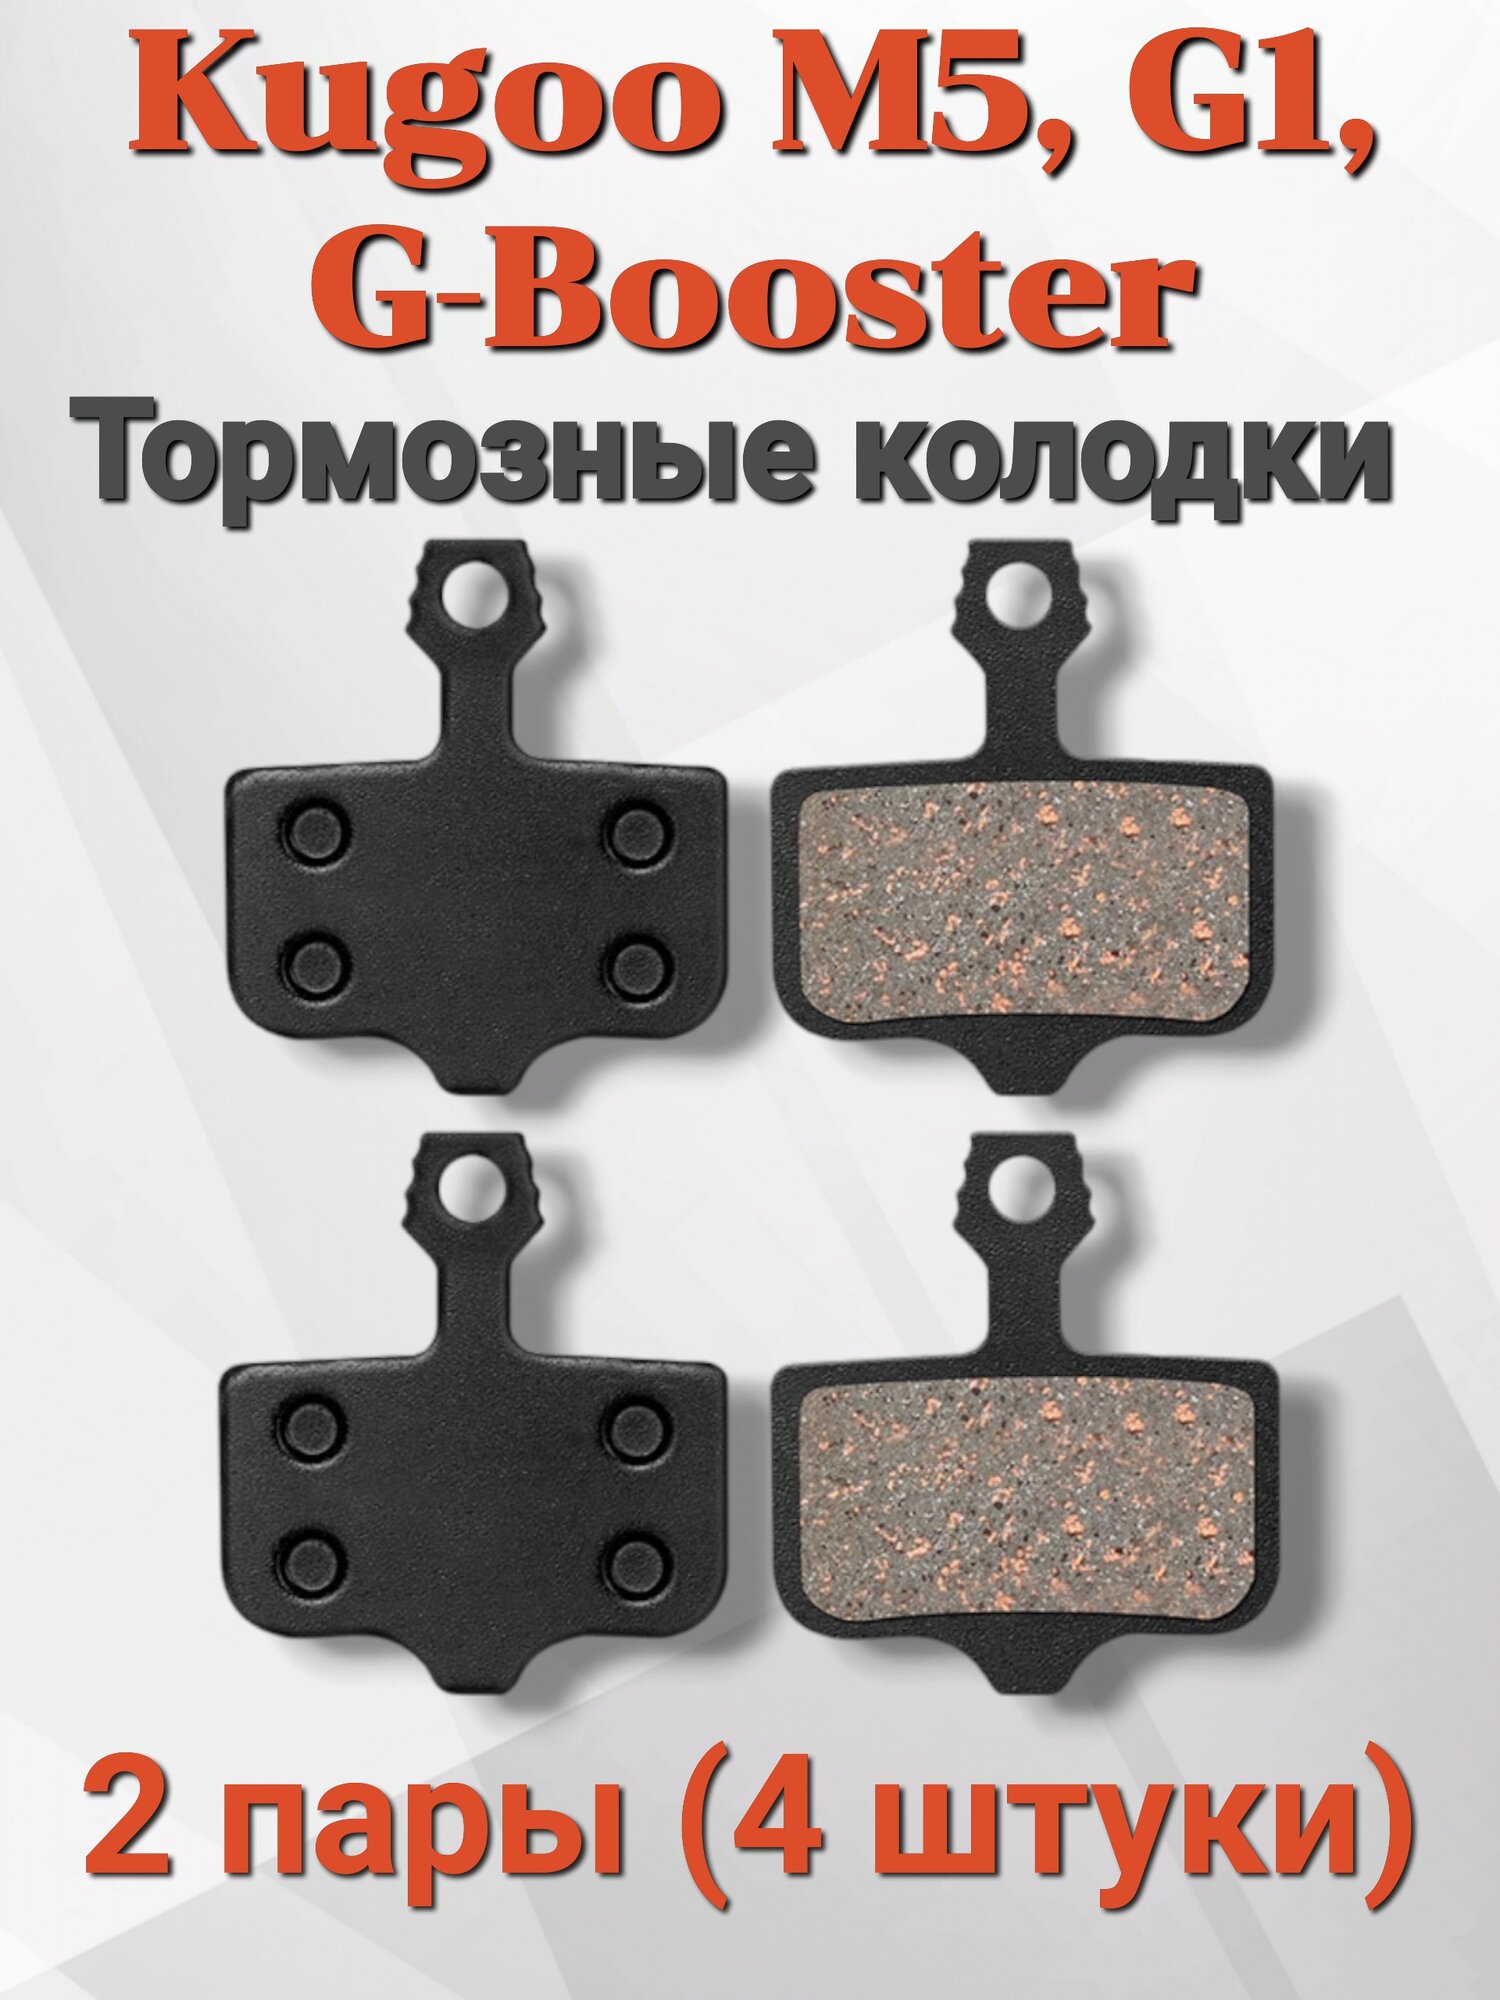 Тормозные колодки для электросамокатов Kugoo M5/G1/G Booster, 4 штуки(2 пары) в упаковке